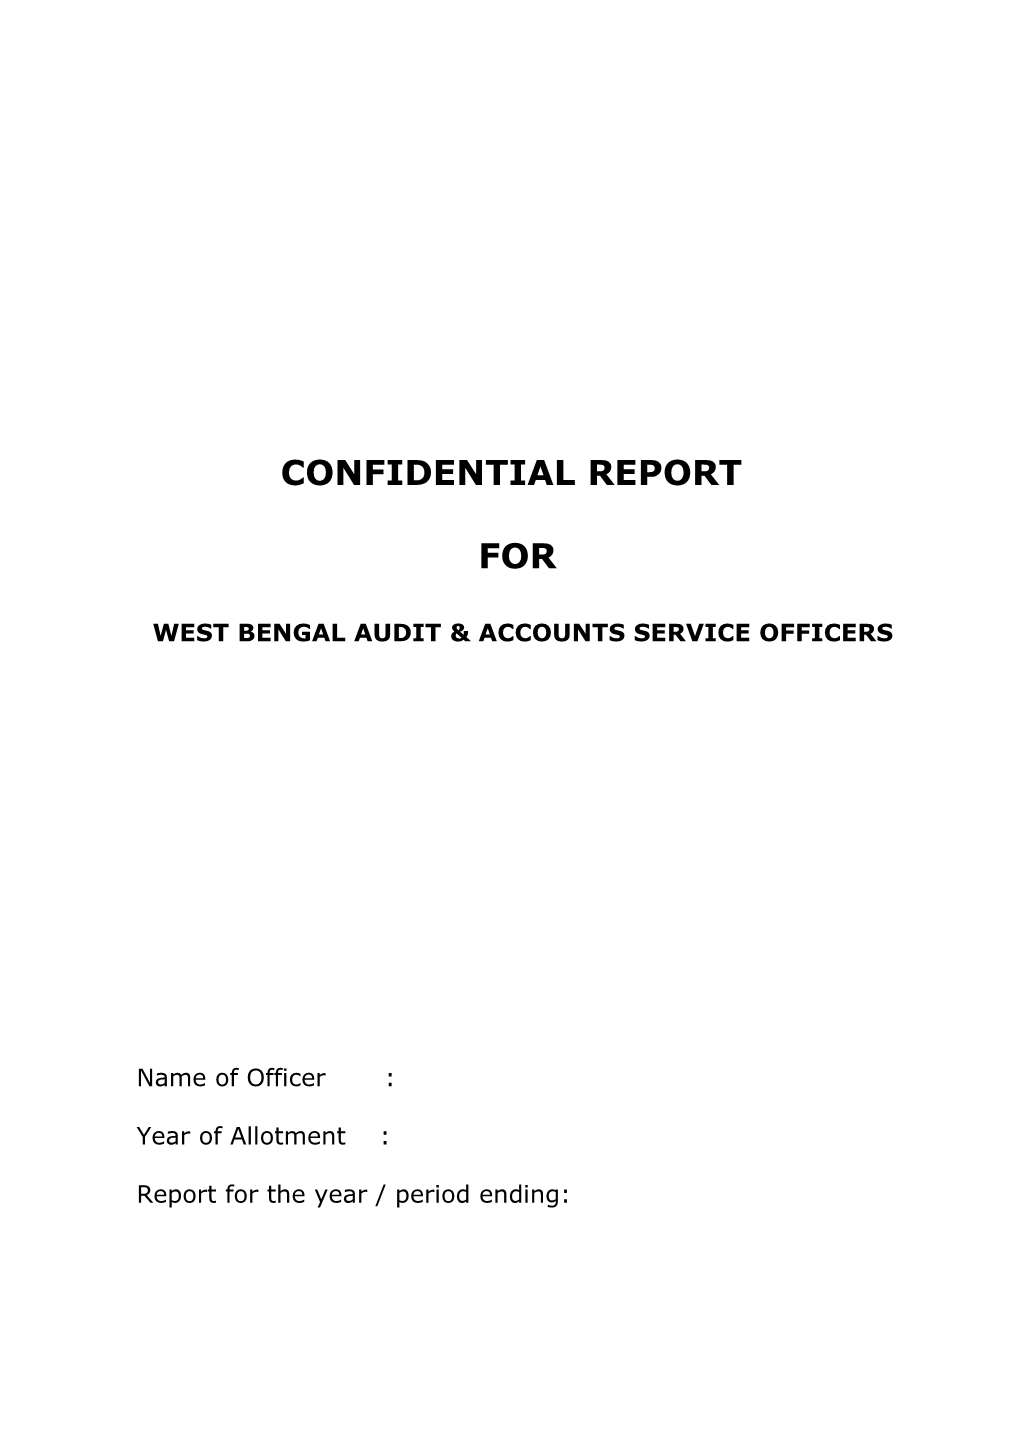 Confidential Report